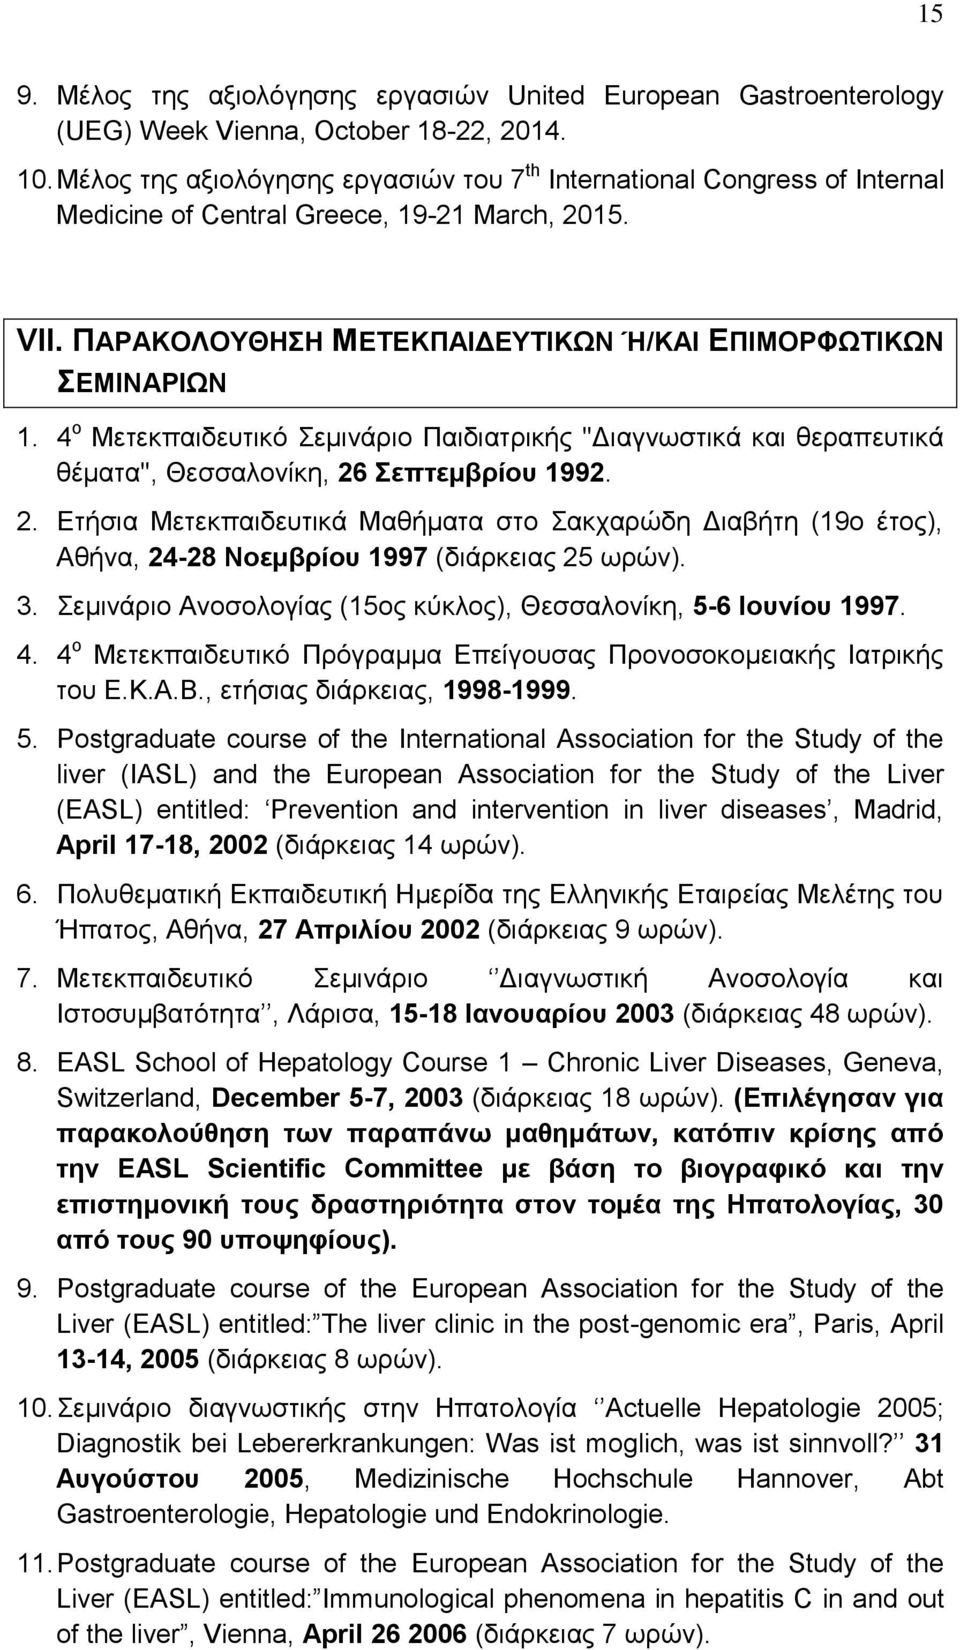 4 ο Μετεκπαιδευτικό Σεμινάριο Παιδιατρικής ''Διαγνωστικά και θεραπευτικά θέματα'', Θεσσαλονίκη, 26